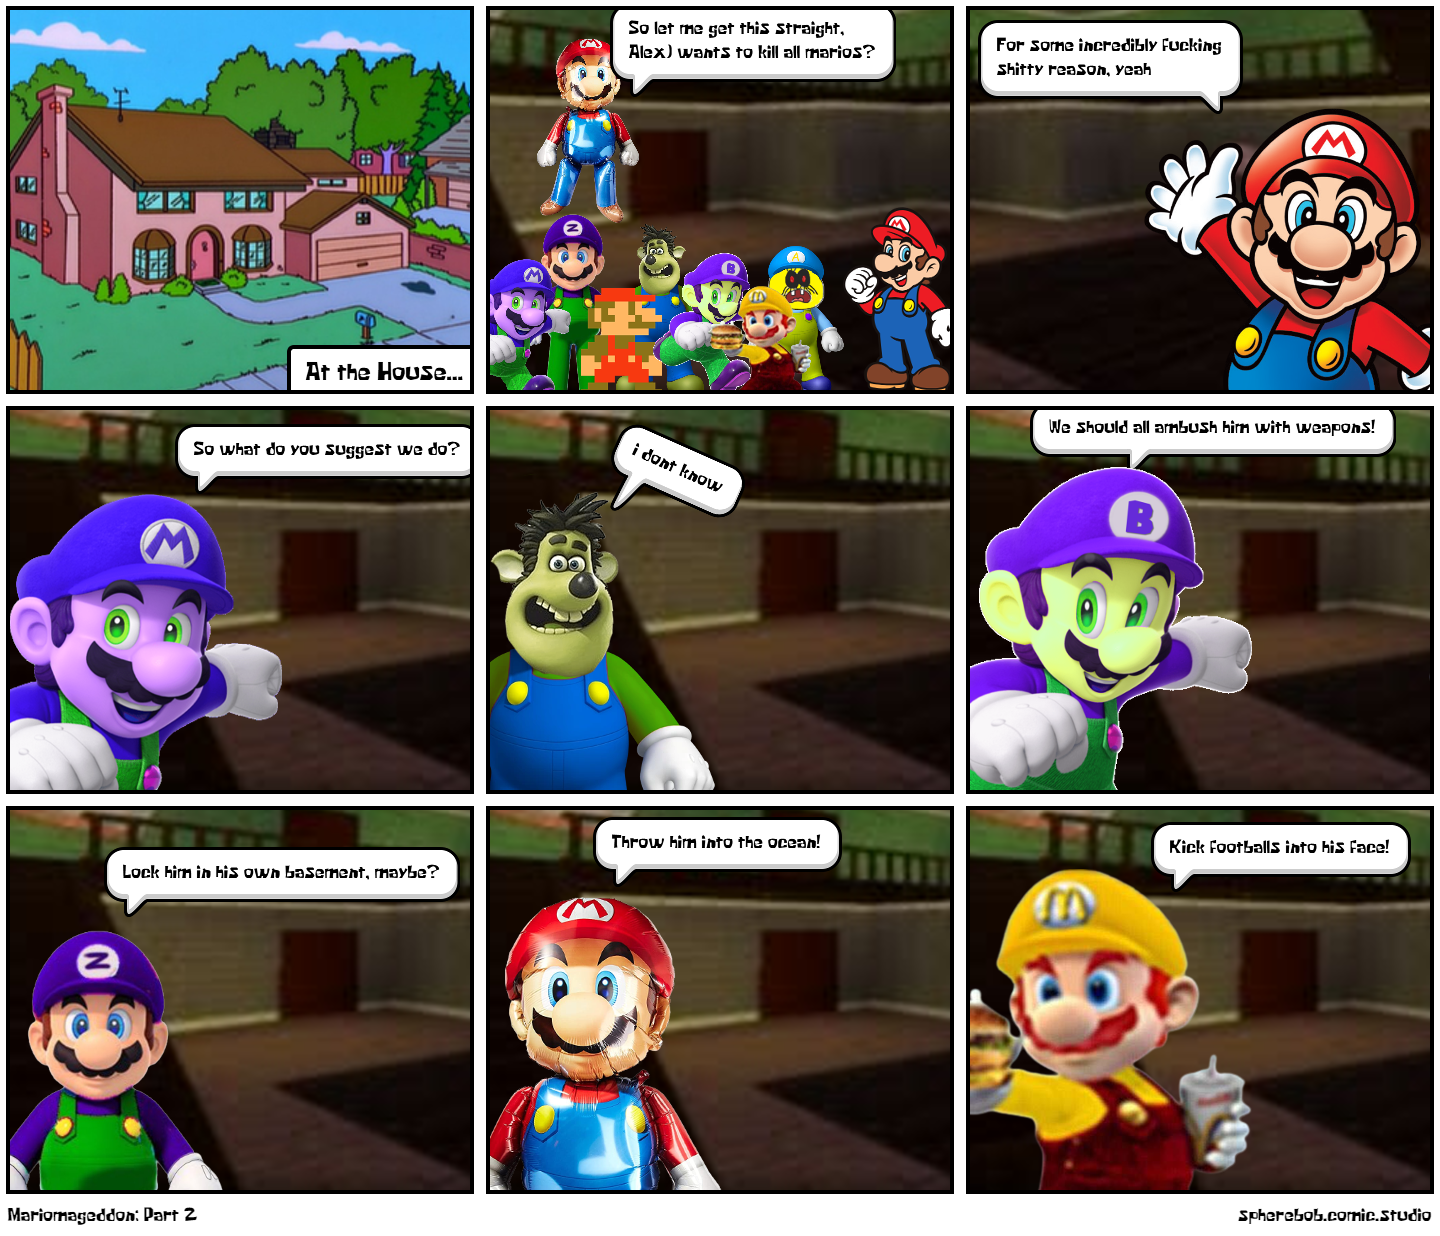 Mariomageddon: Part 2